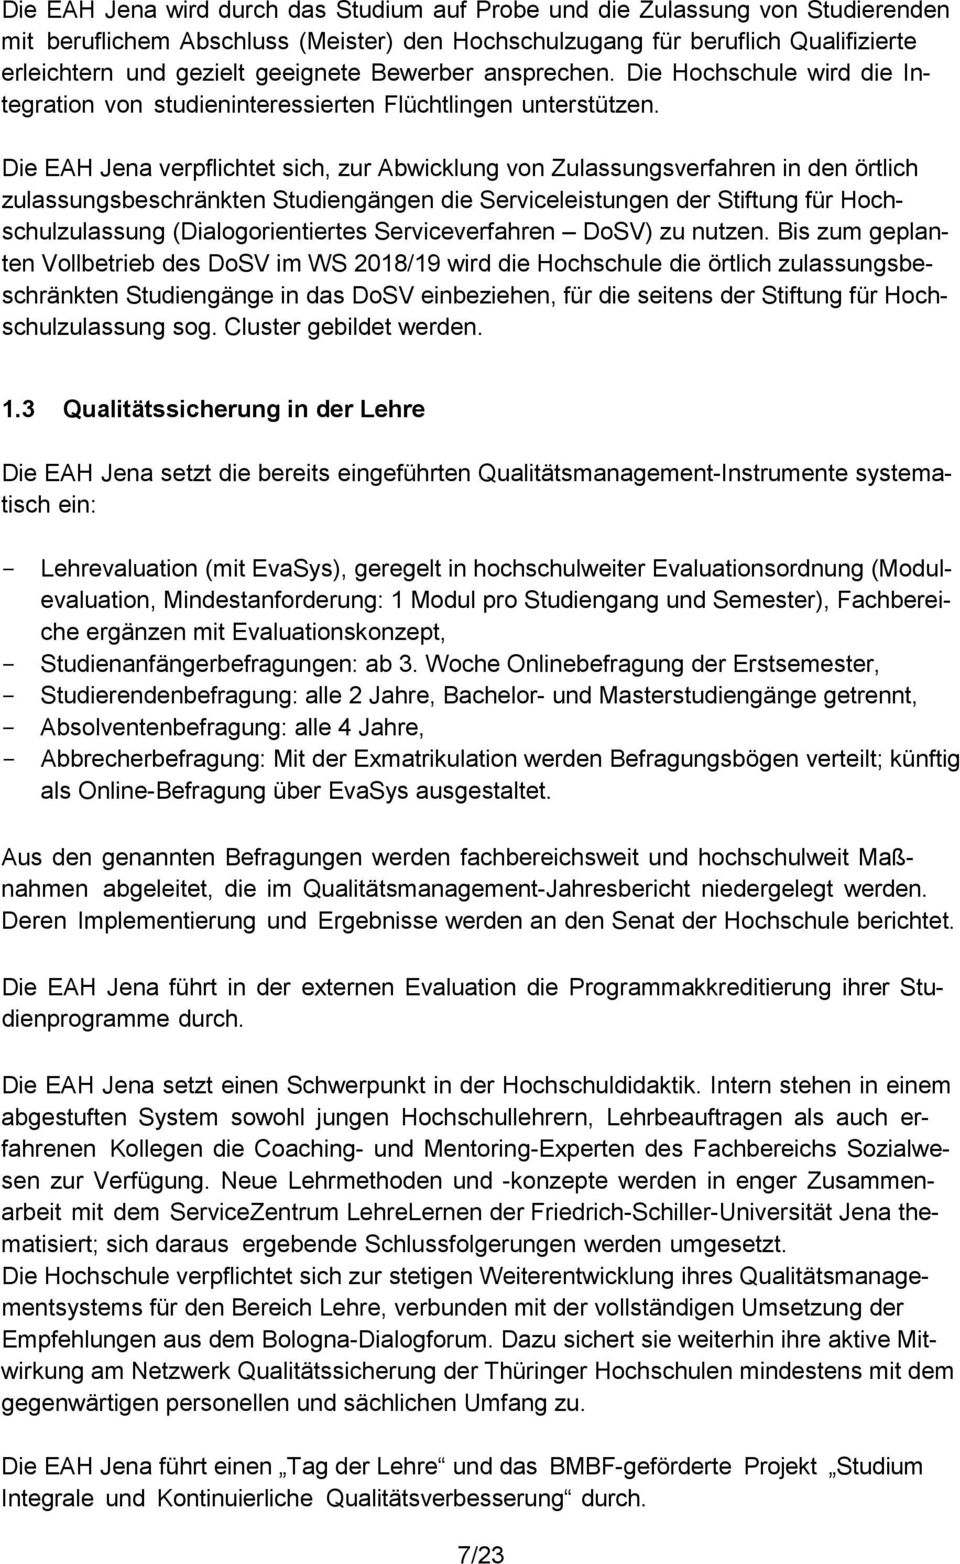 Die EAH Jena verpflichtet sich, zur Abwicklung von Zulassungsverfahren in den örtlich zulassungsbeschränkten Studiengängen die Serviceleistungen der Stiftung für Hochschulzulassung